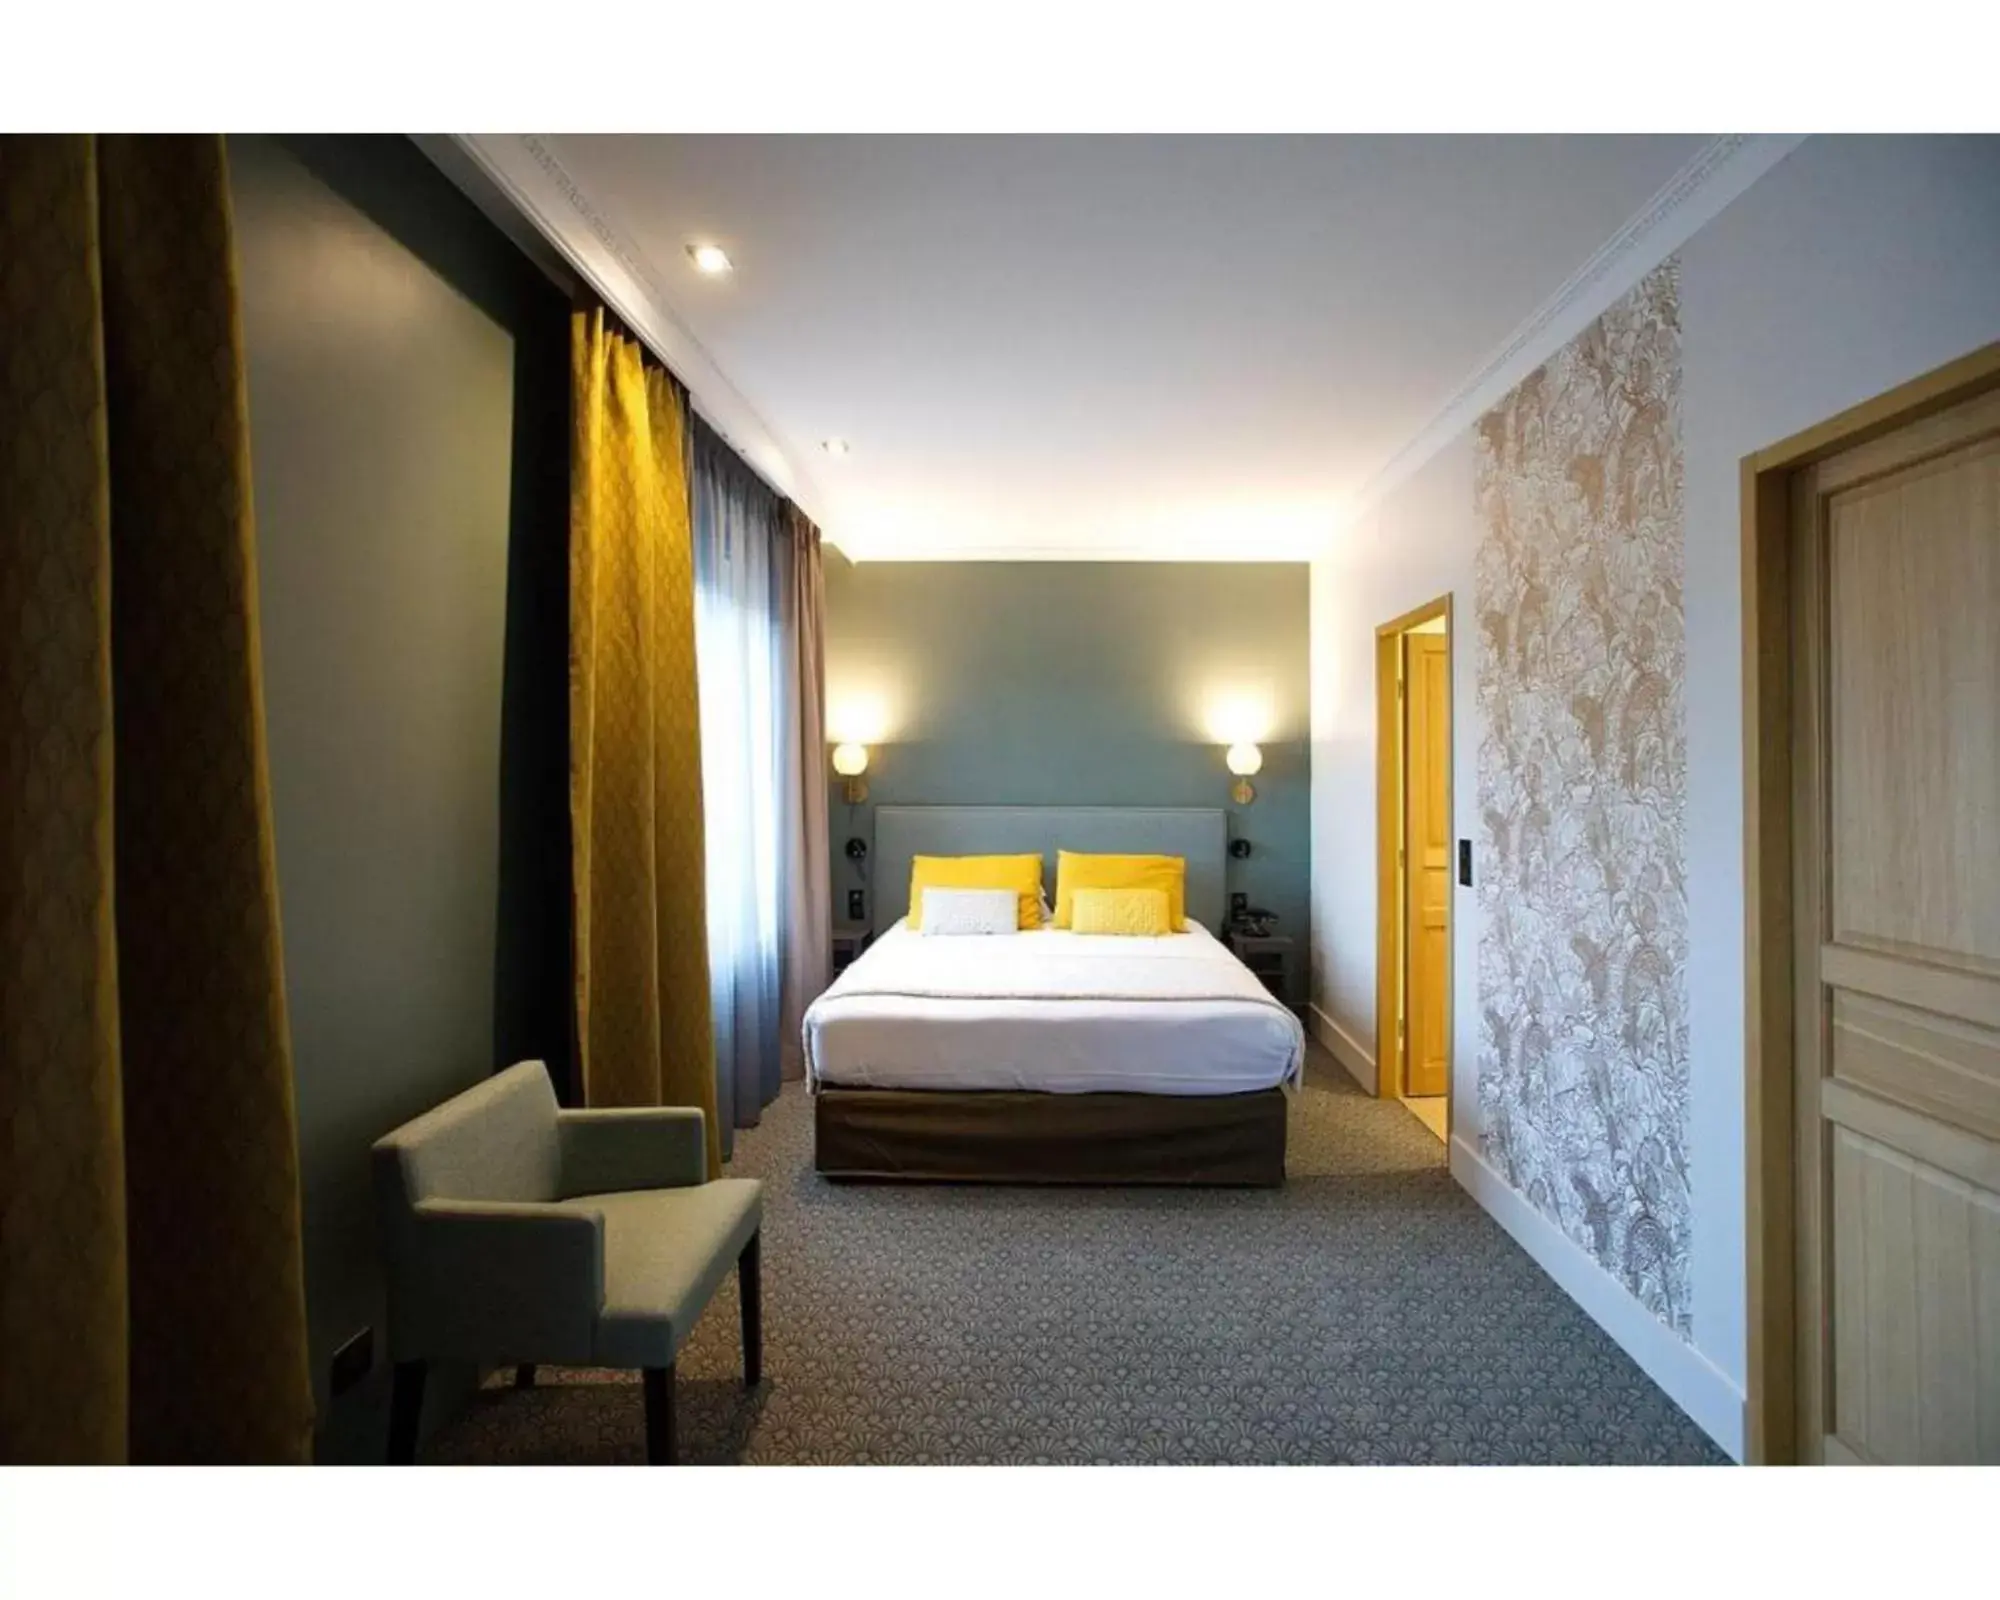 Bed in Best Western Plus Hotel de Dieppe 1880